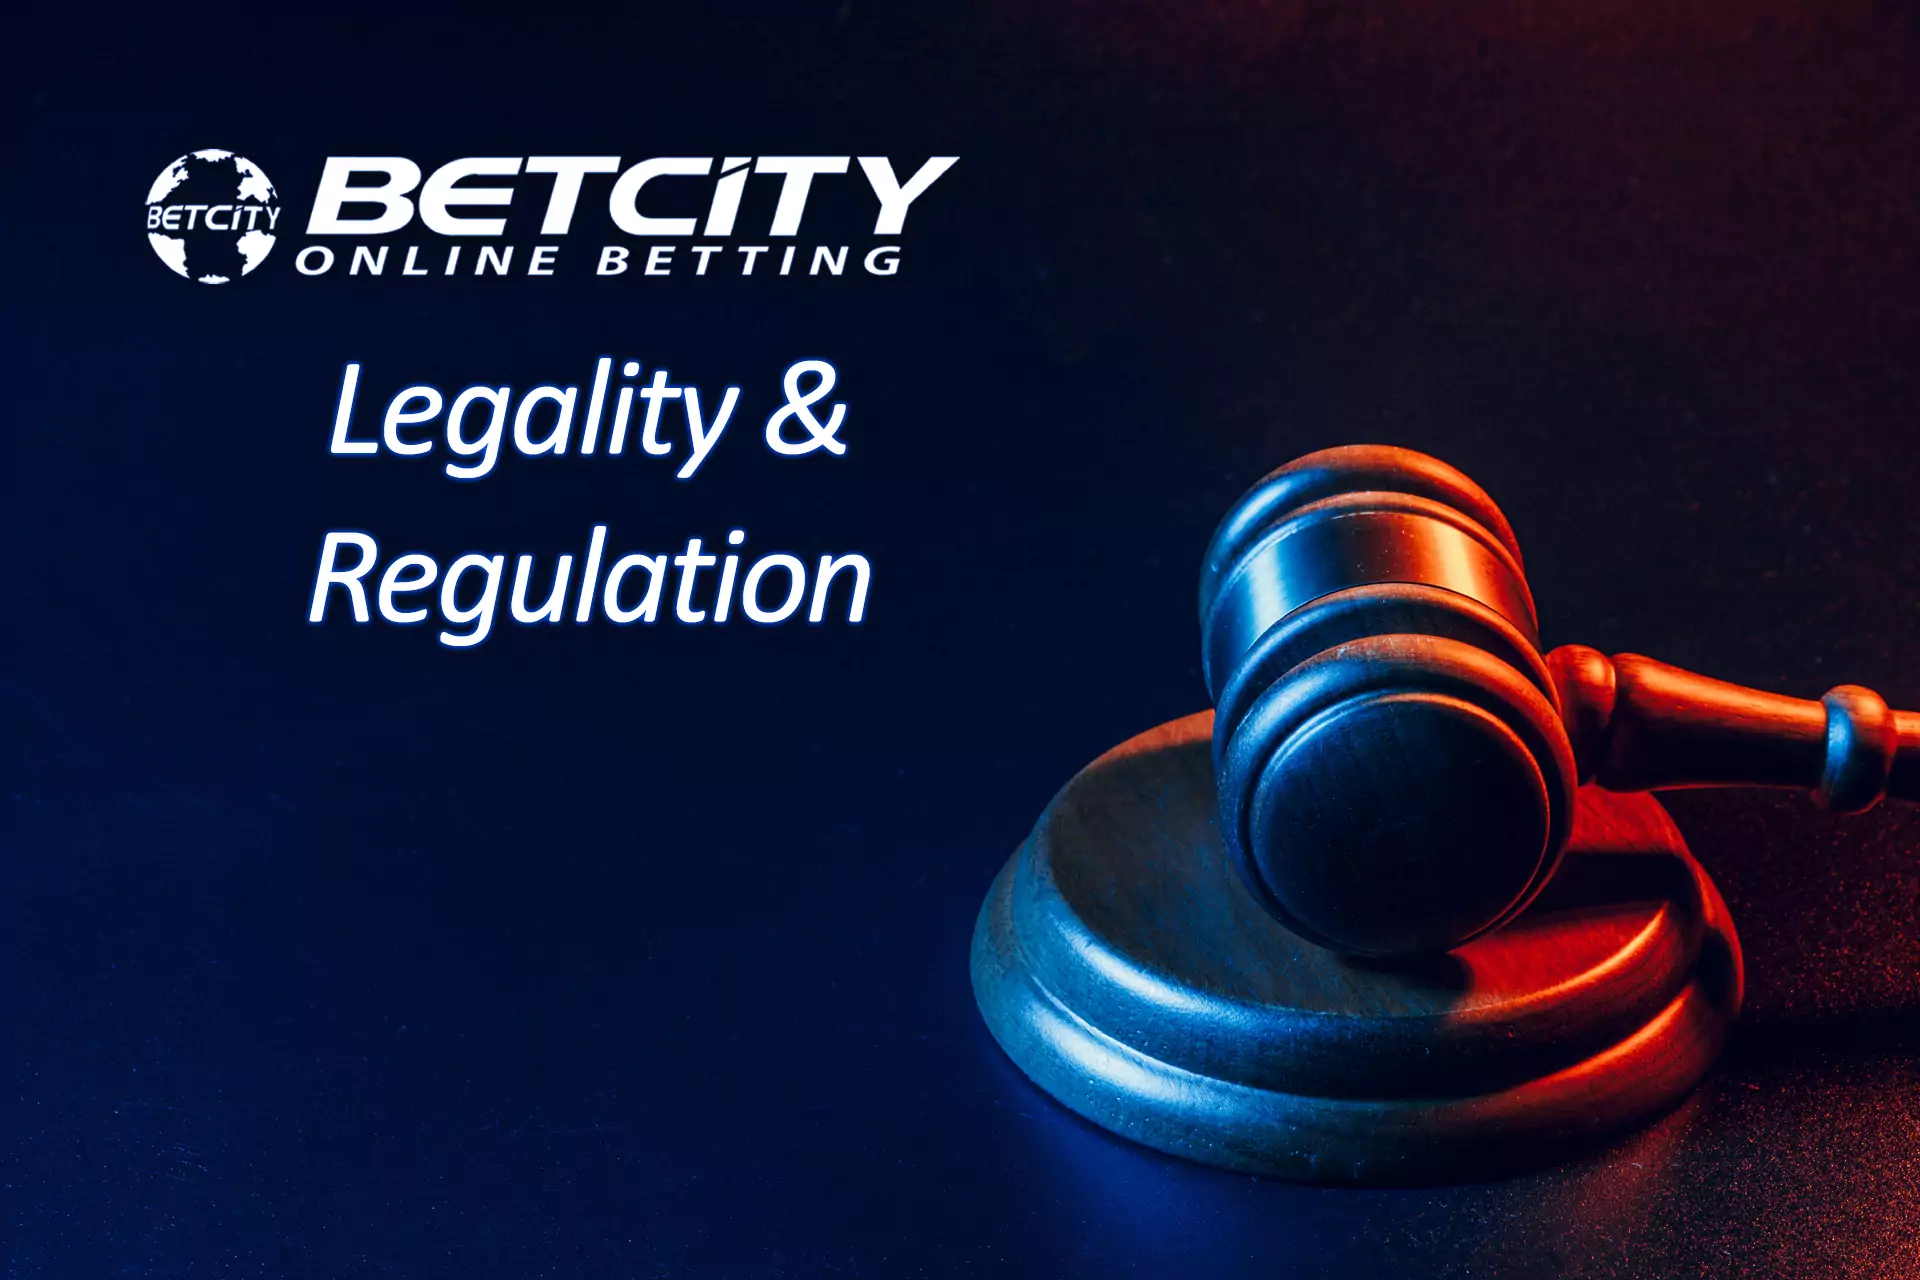 Betcity साइट स्थानीय लाइसेंस का उपयोग करके कानूनी रूप से काम करती है।